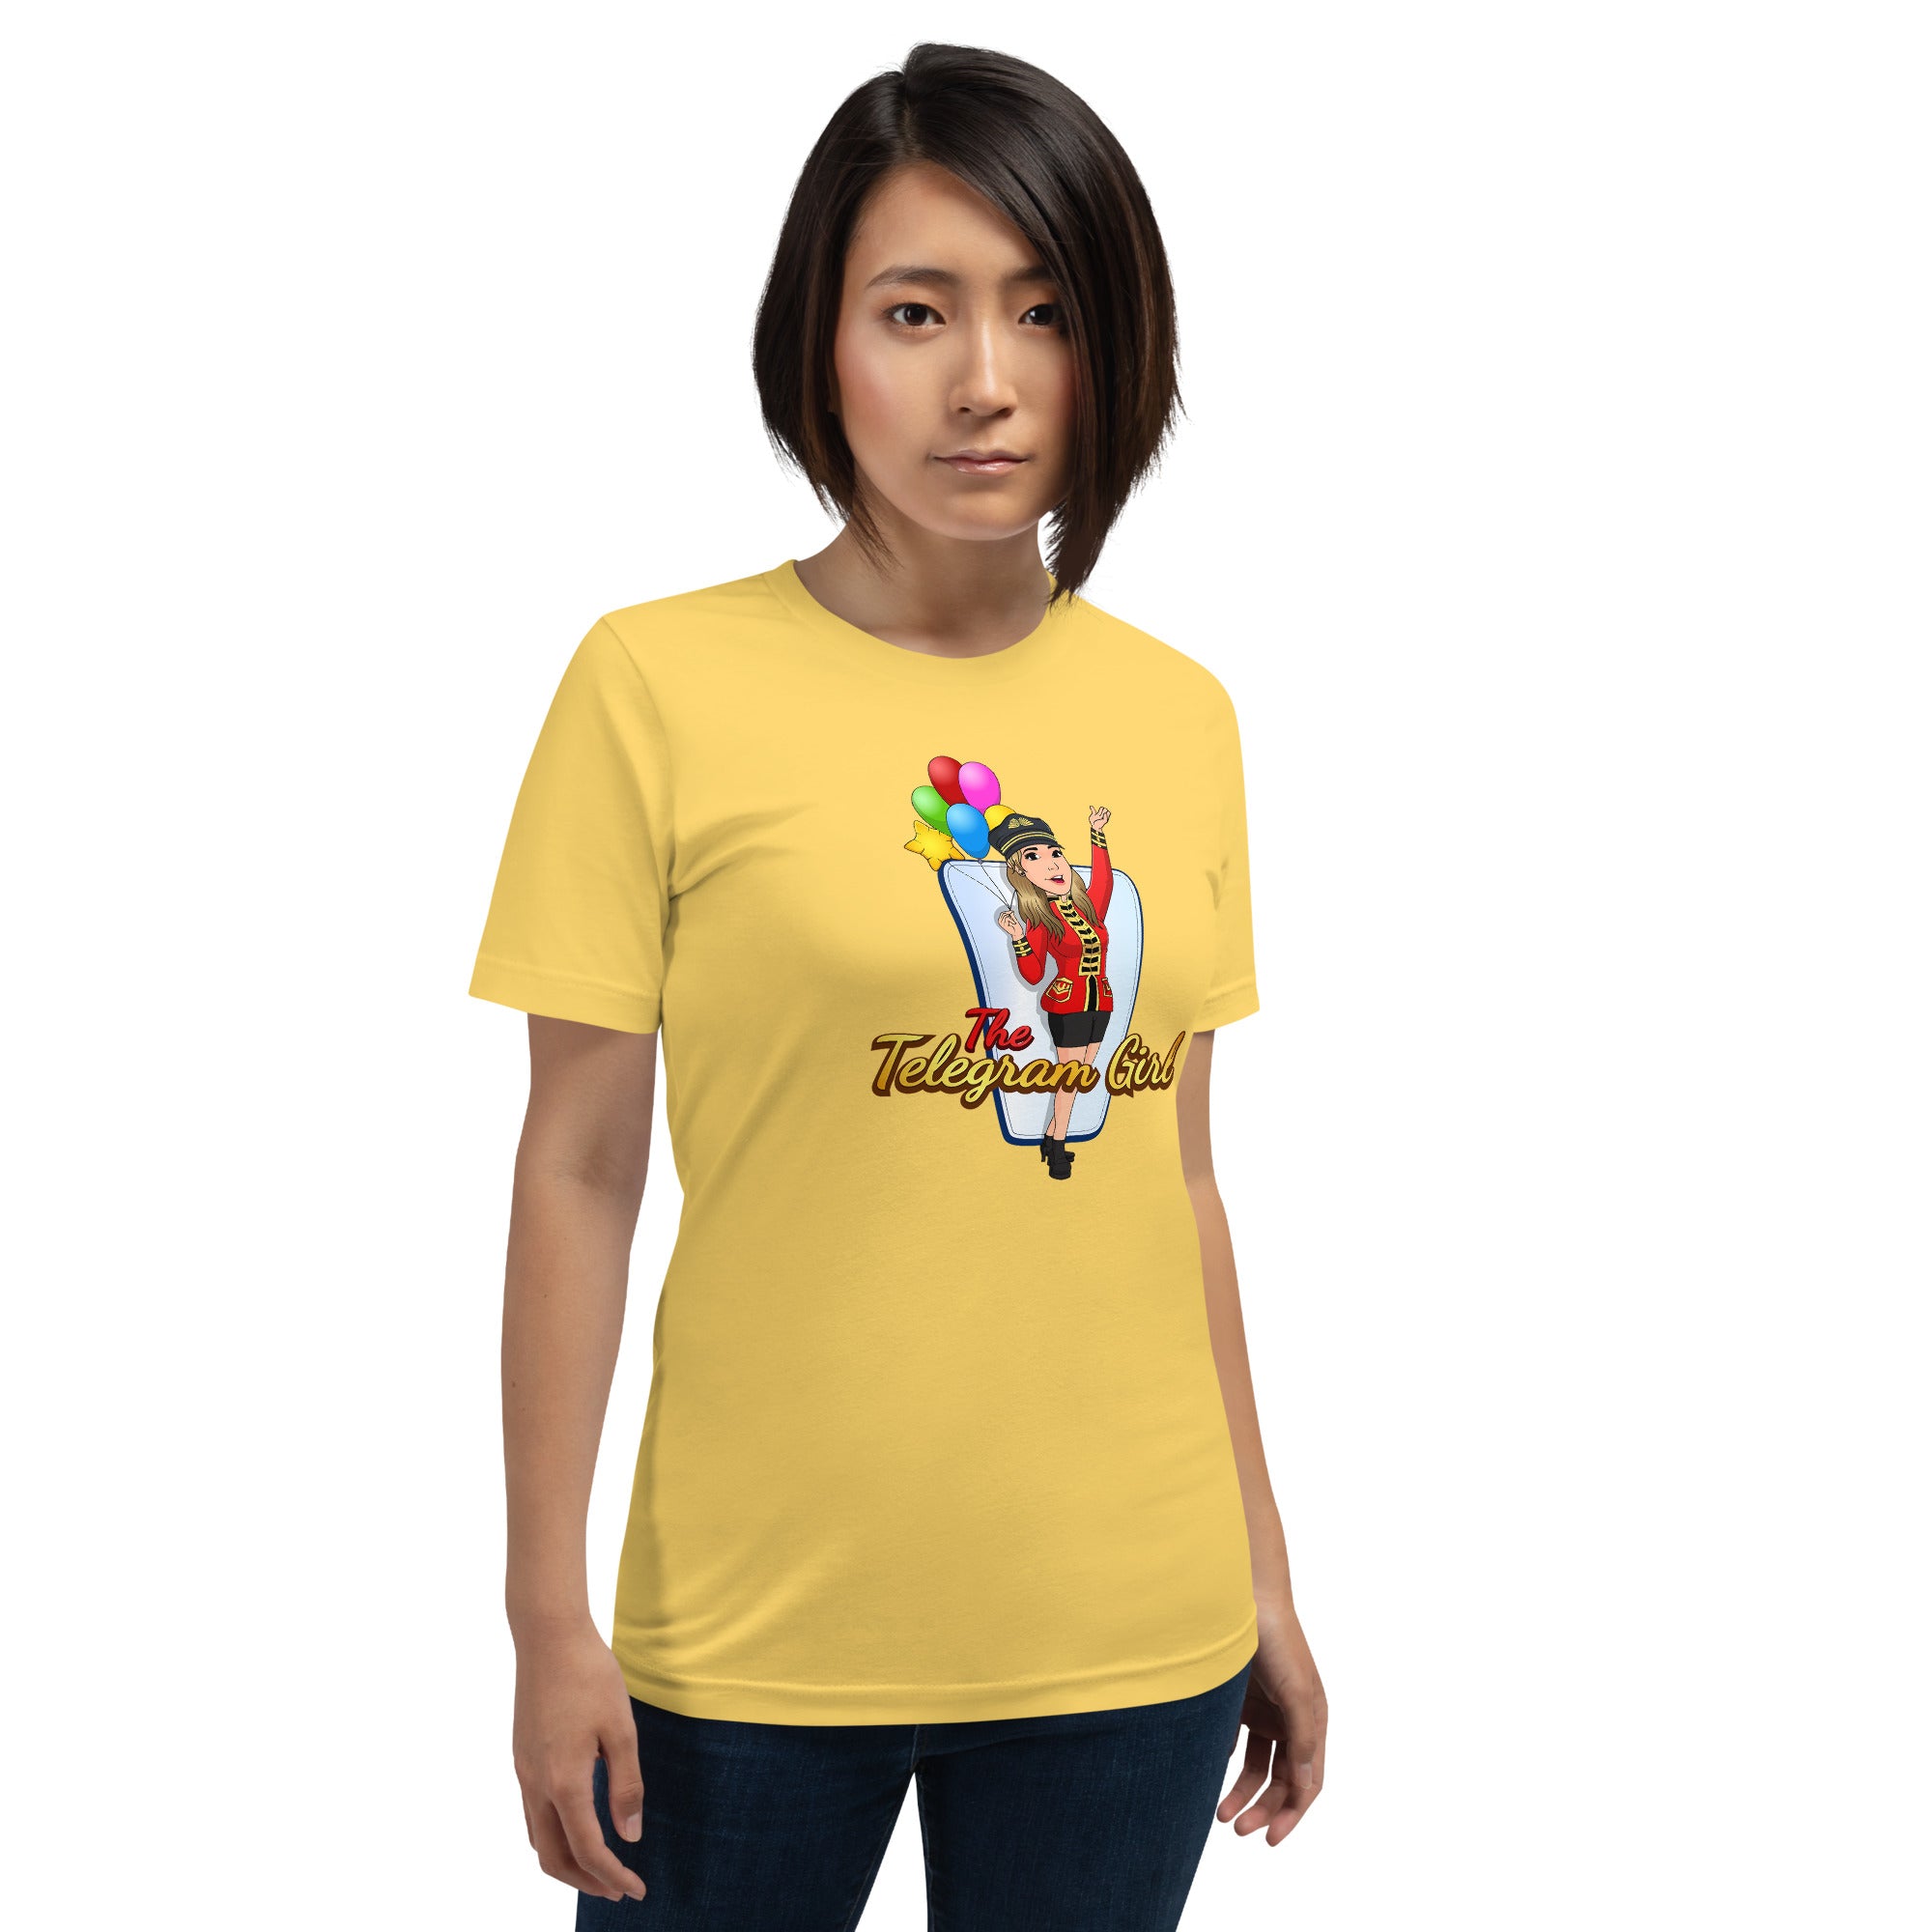 The Telegram Girl Unisex t-shirt